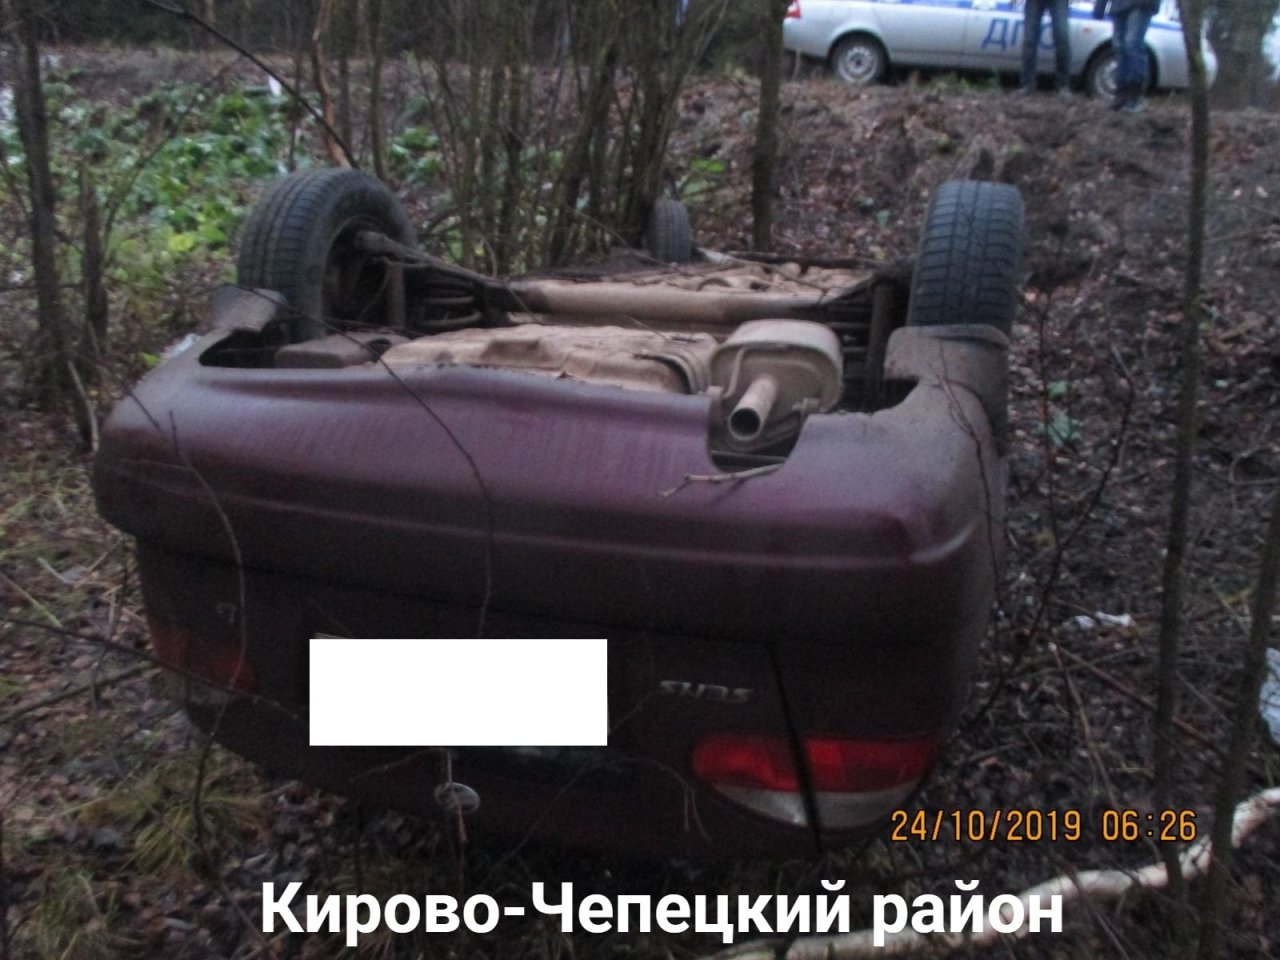 В Чепецком районе произошло ДТП: автомобиль перевернулся в кювете